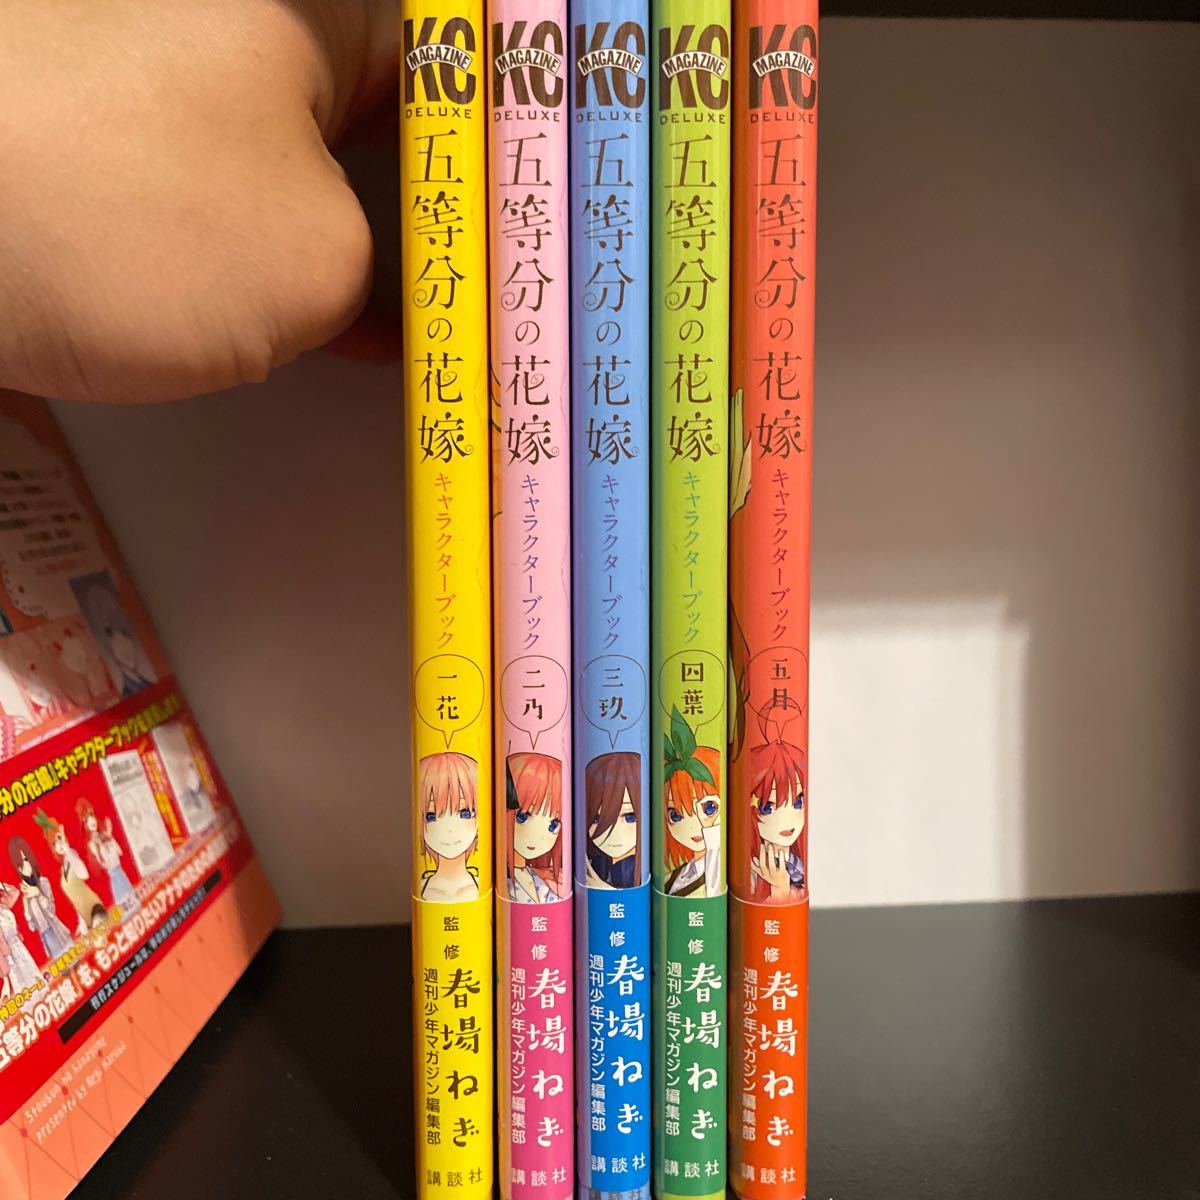 五等分の花嫁 全巻セット キャラクターブック Blu-rayライブ